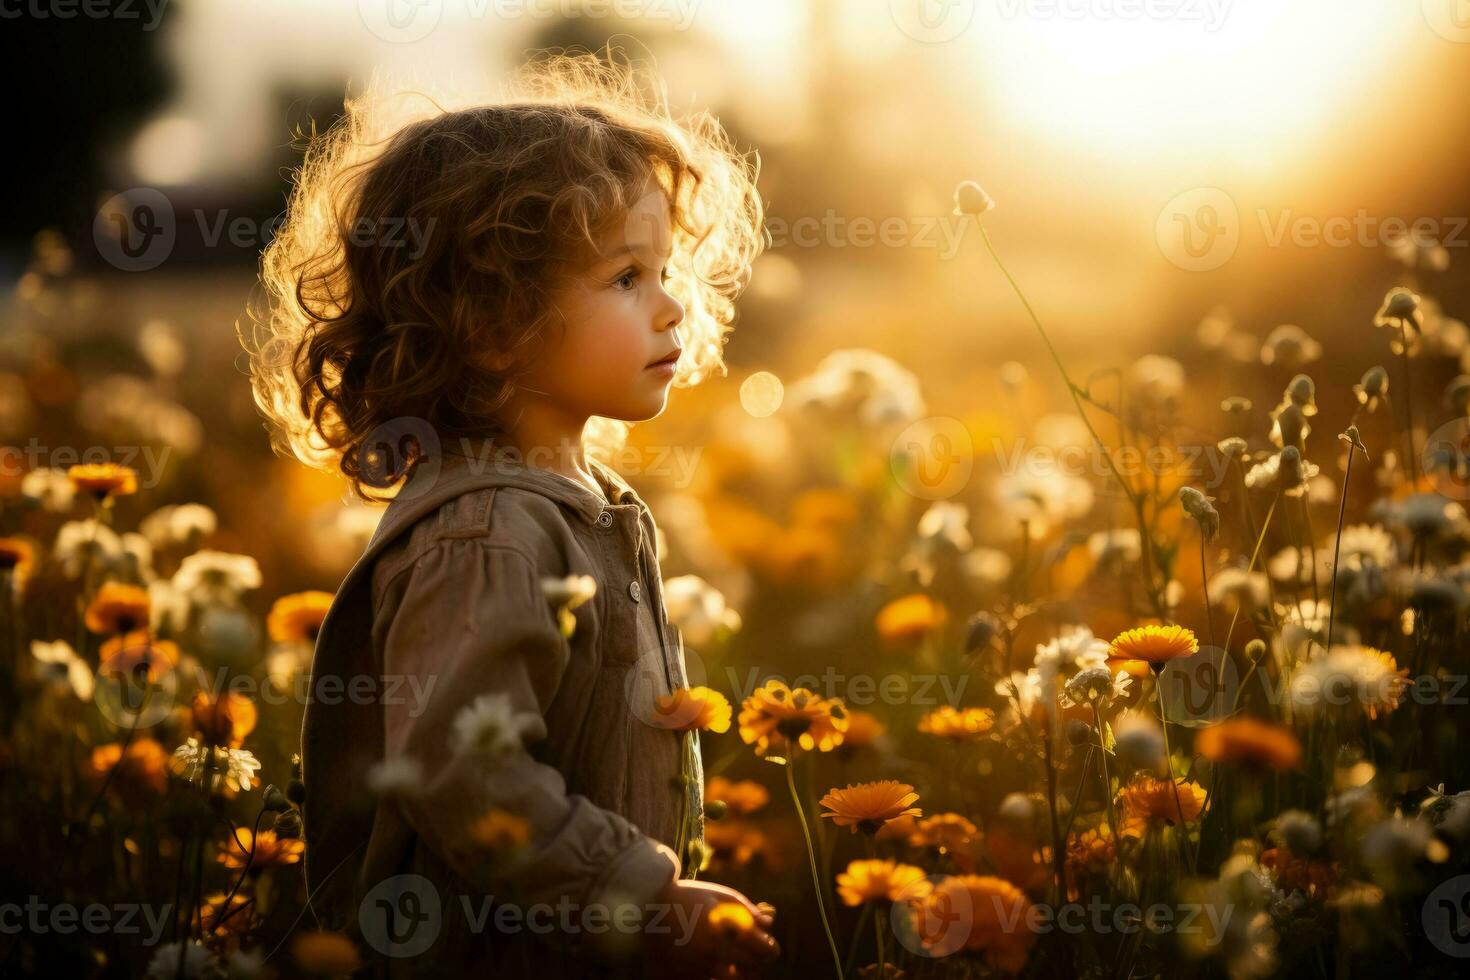 curioso niño maravillándose a floreciente flores silvestres en un Dom empapado prado foto